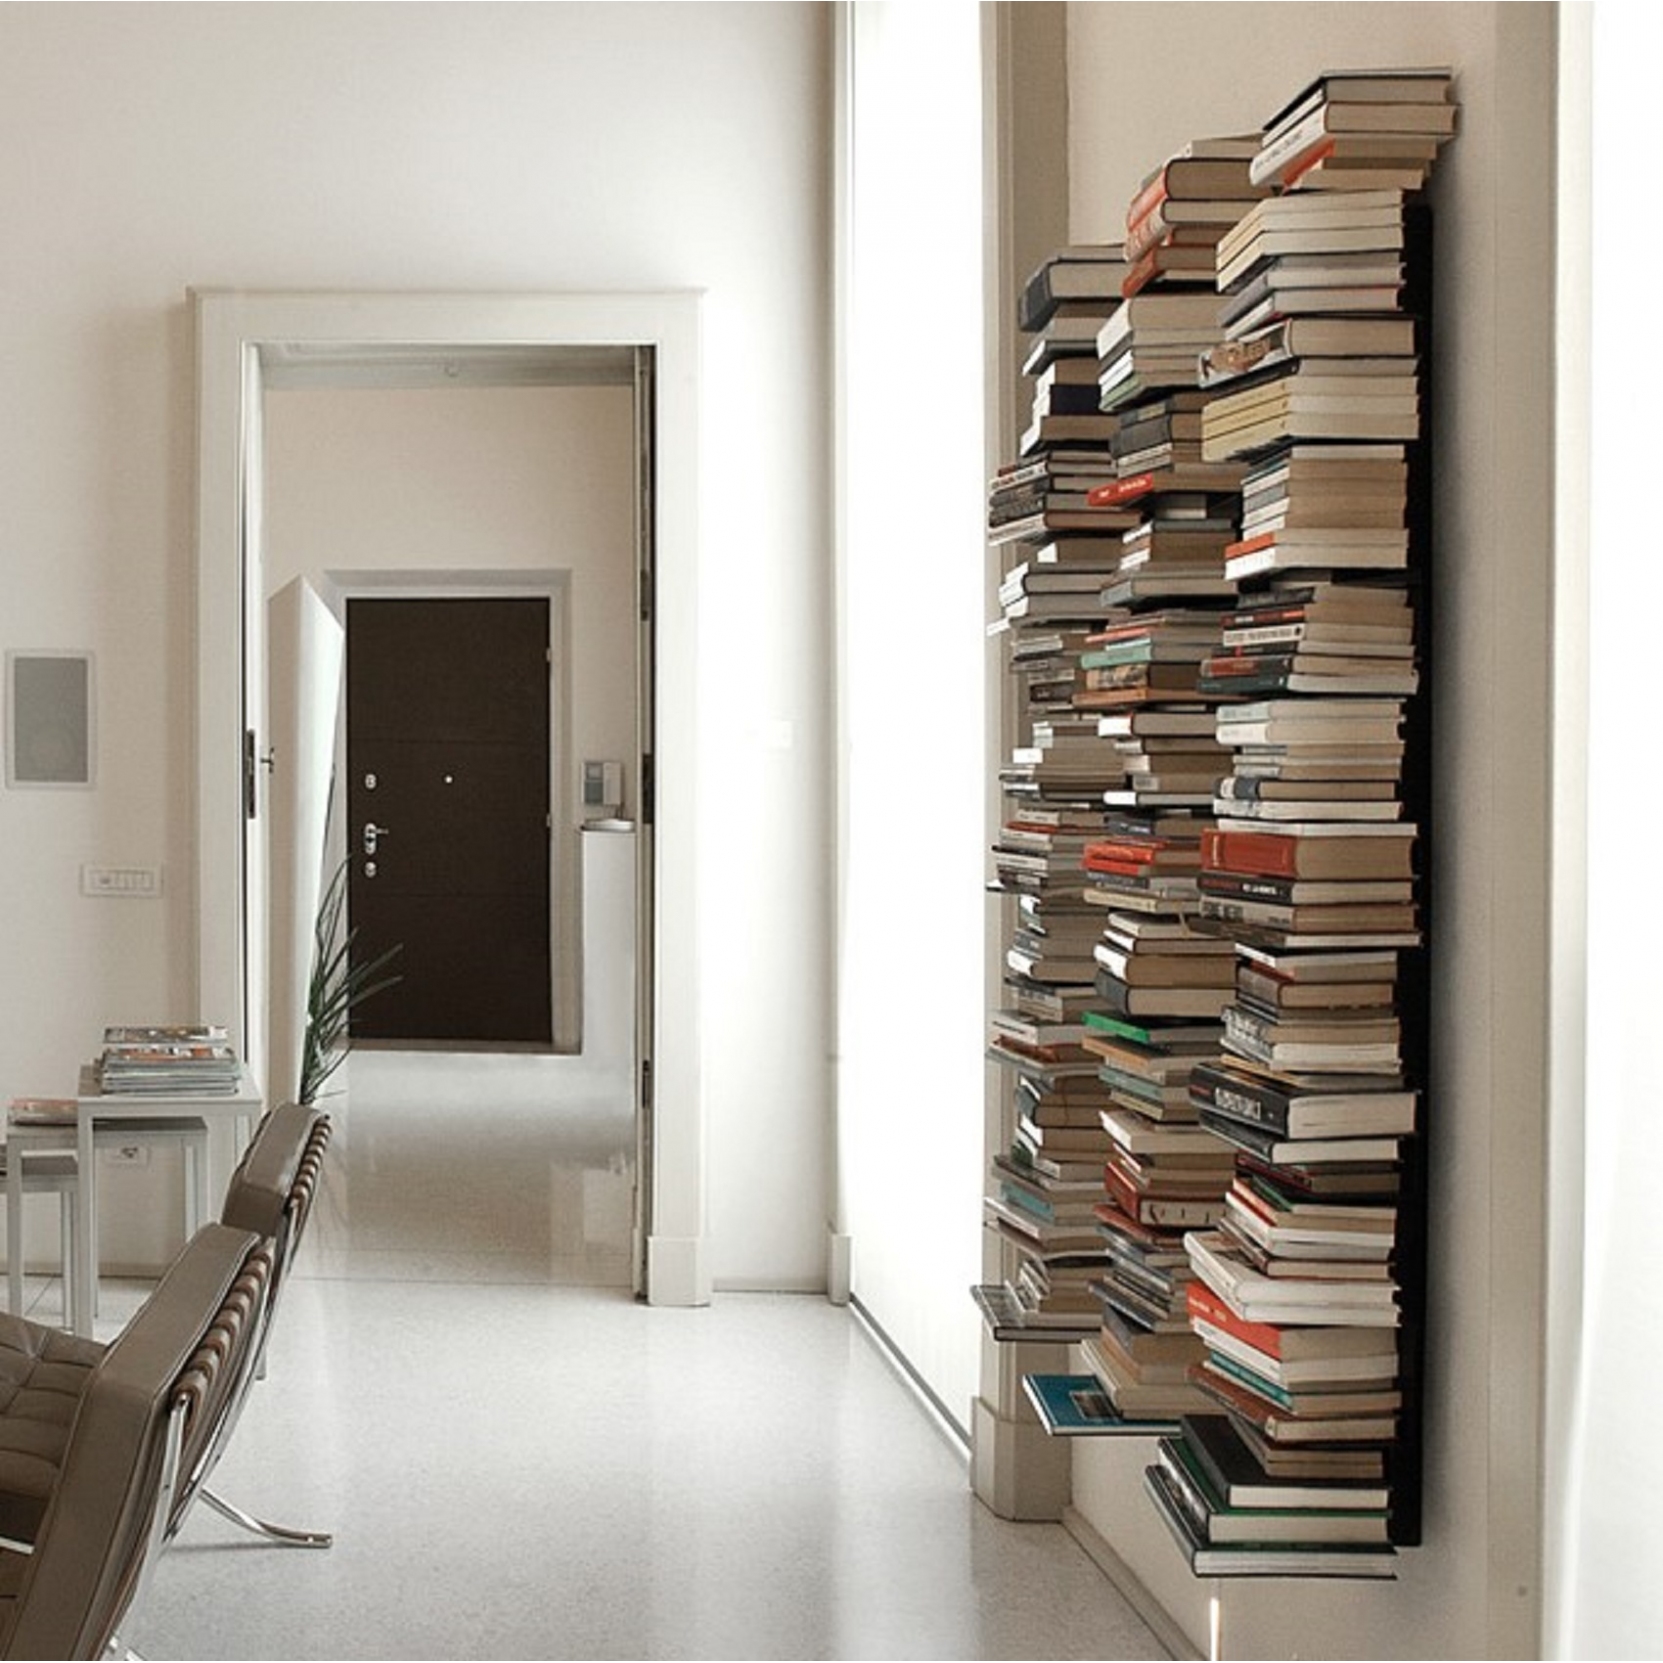 Opinion Ciatti Ptolomeo Wall Bookcase, Wall To Bookcase